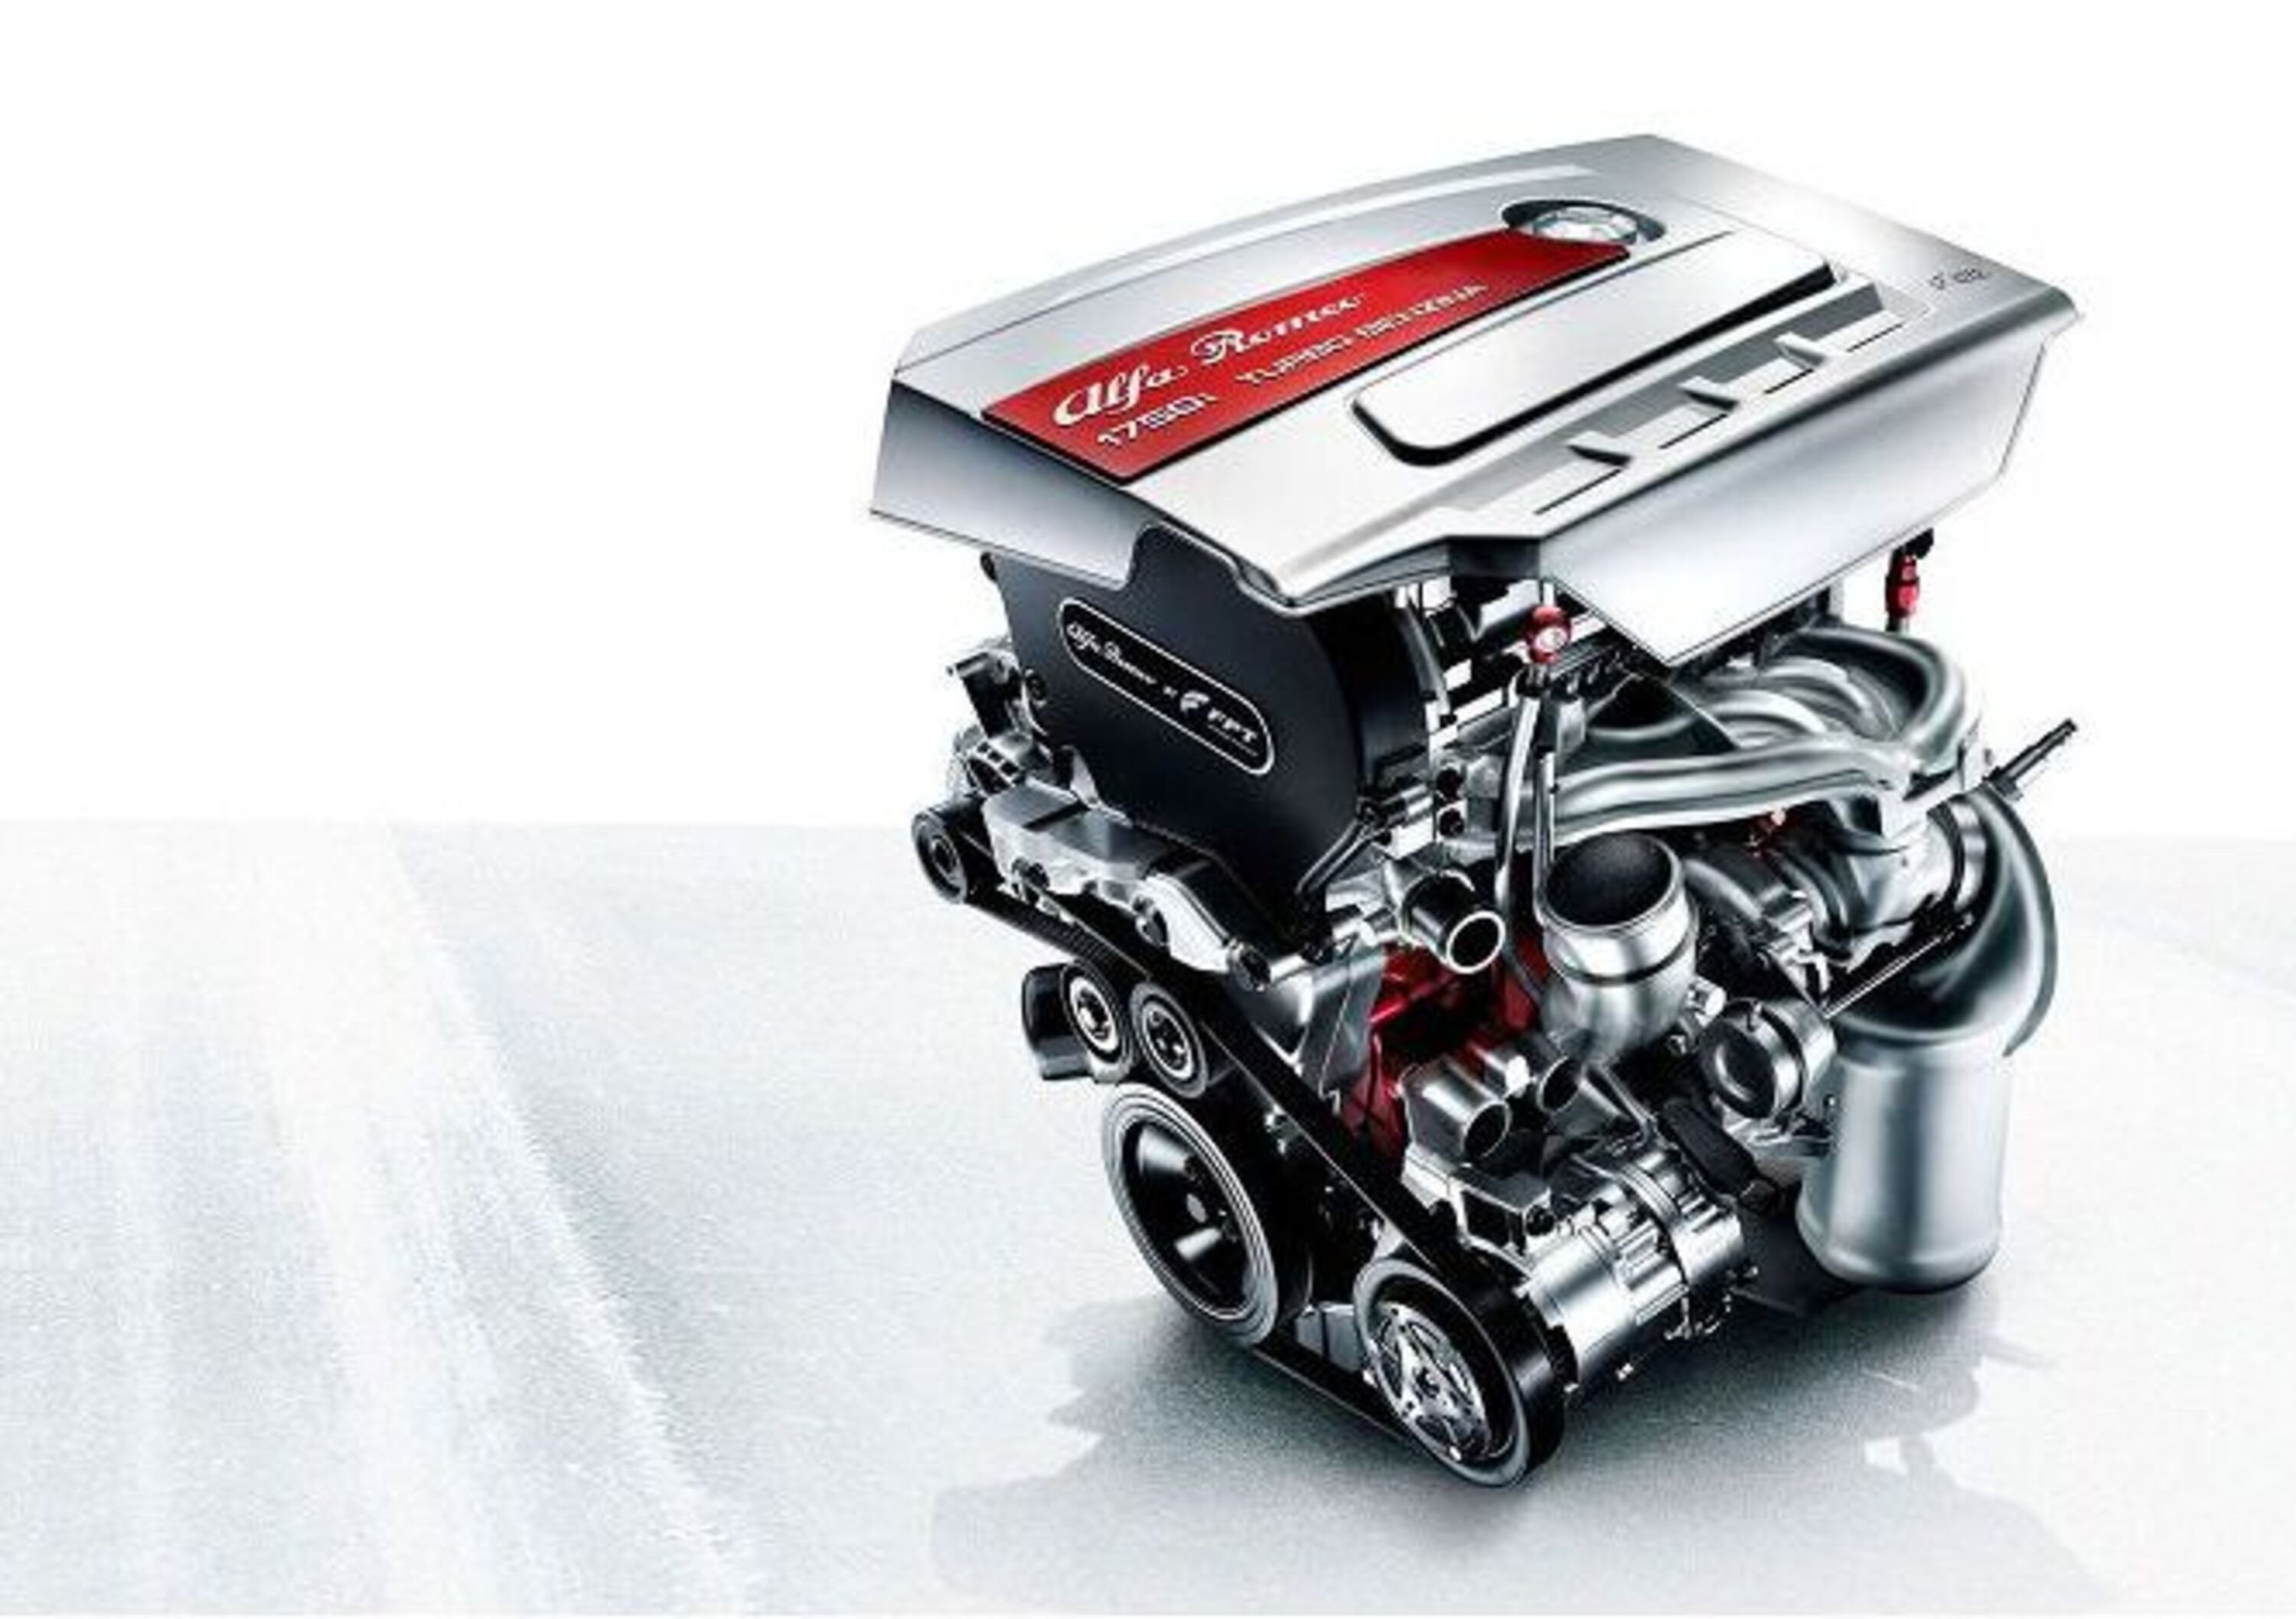 Alfa Romeo: in cantiere un nuovo 4 cilindri da 300 CV